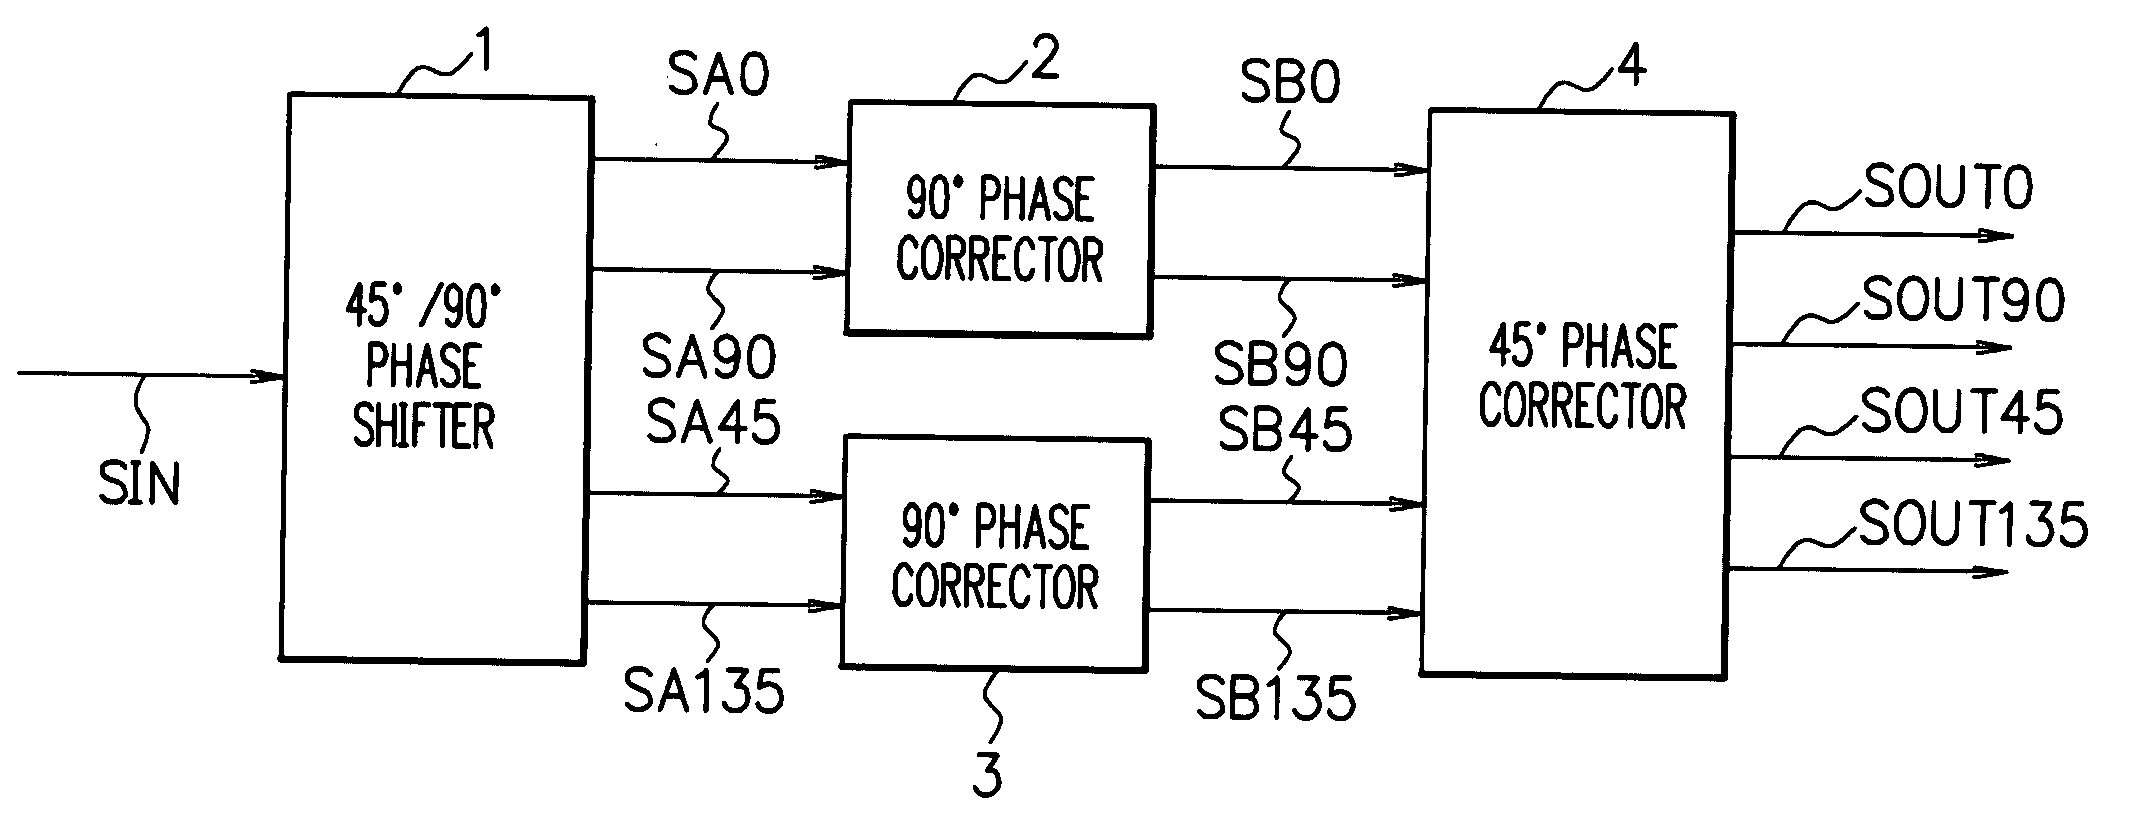 Phase shift circuit and phase correcting method